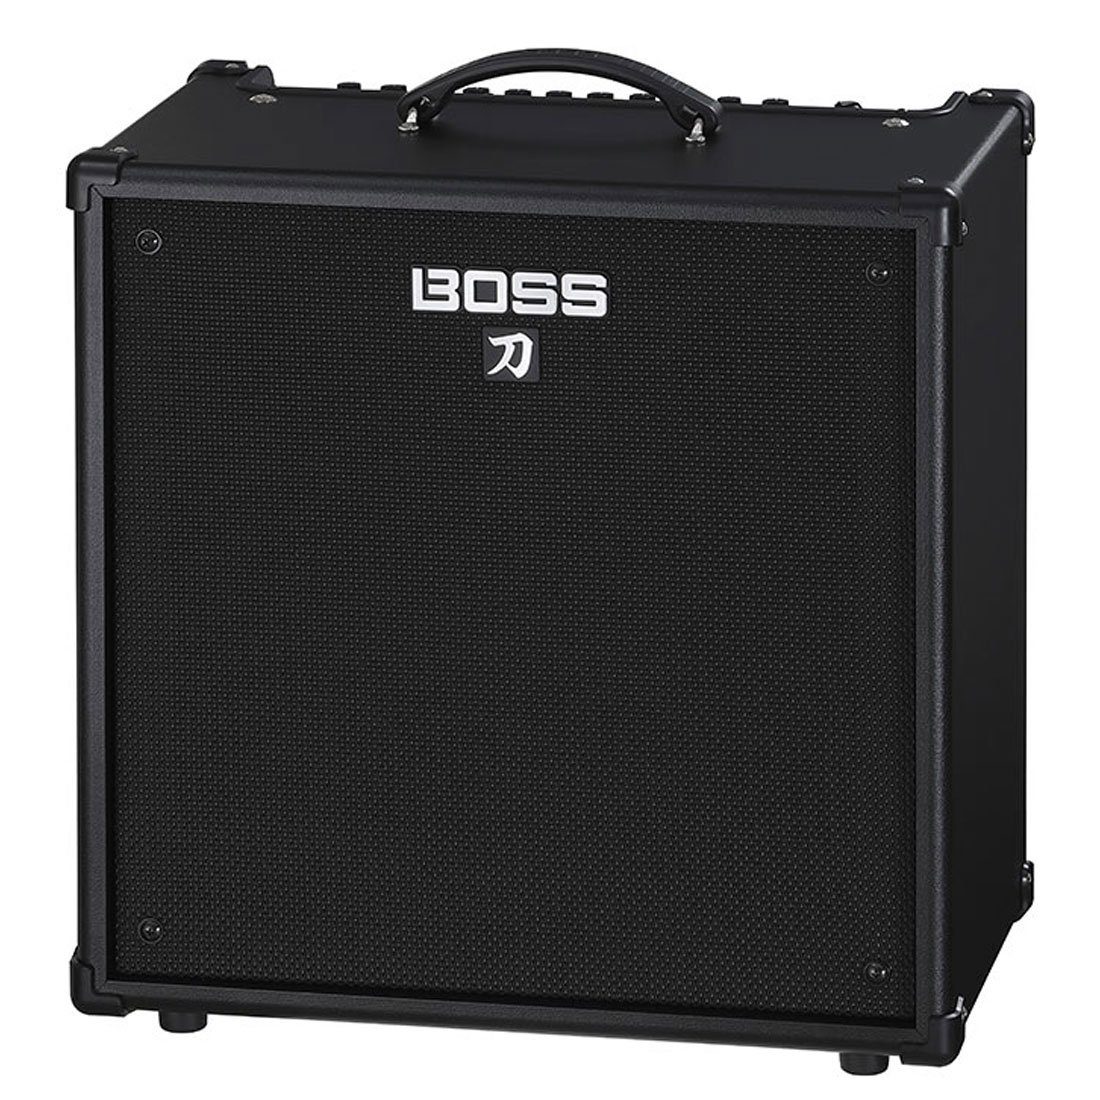 Boss by Roland Verstärker Verstärker Combo 110 Bass Katana Boss